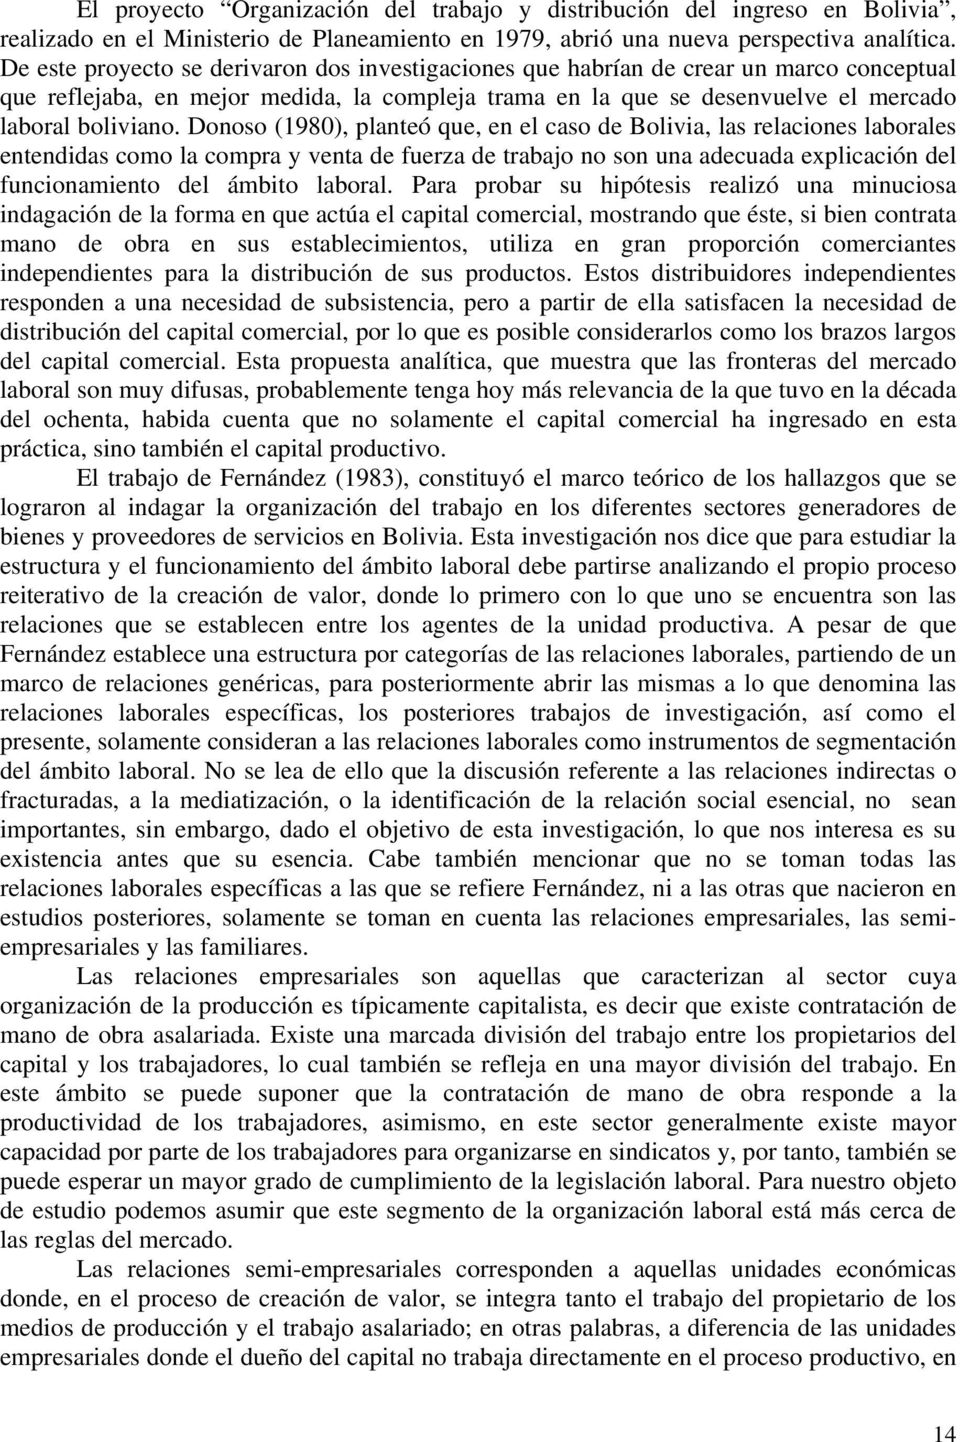 Donoso (1980), planteó que, en el caso de Bolivia, las relaciones laborales entendidas como la compra y venta de fuerza de trabajo no son una adecuada explicación del funcionamiento del ámbito